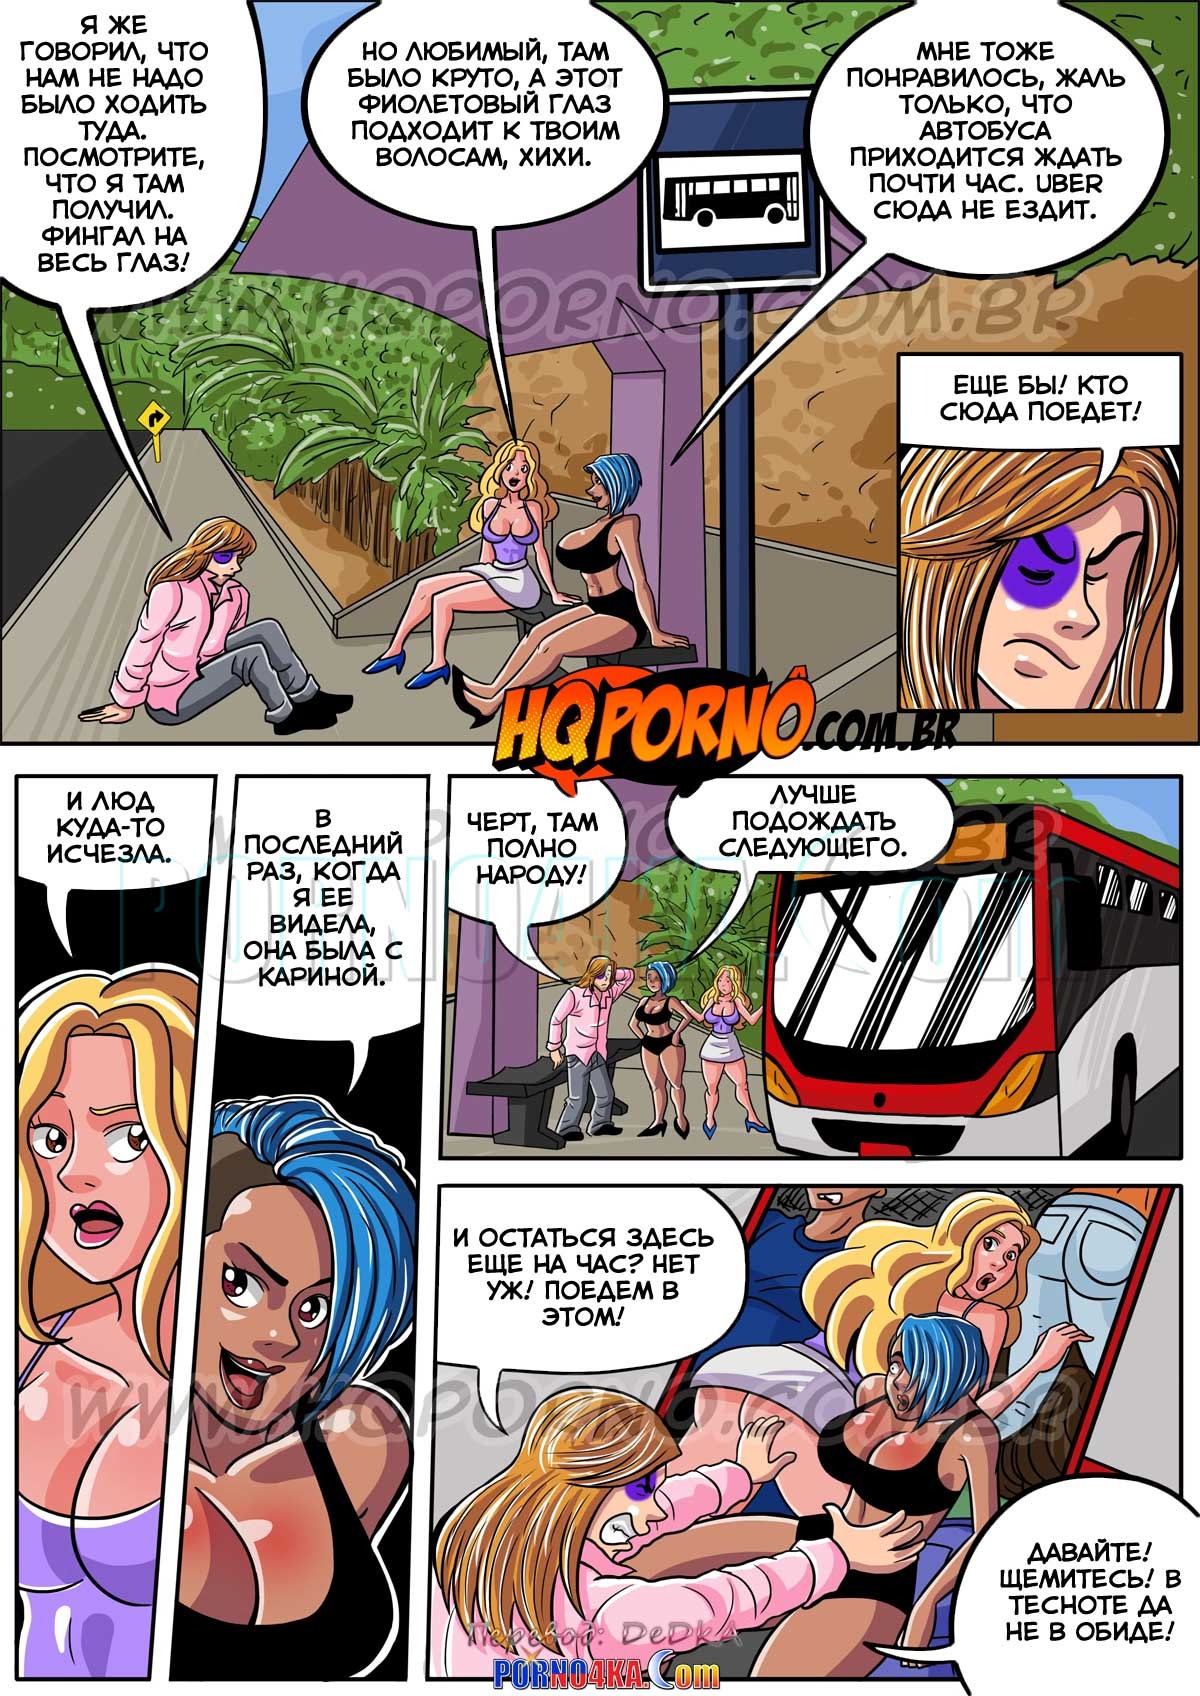 Порно комикс Ах путаны. Часть 3. Разврат в автобусе > Изюминка эротических  комиксов - Comicsdva.com